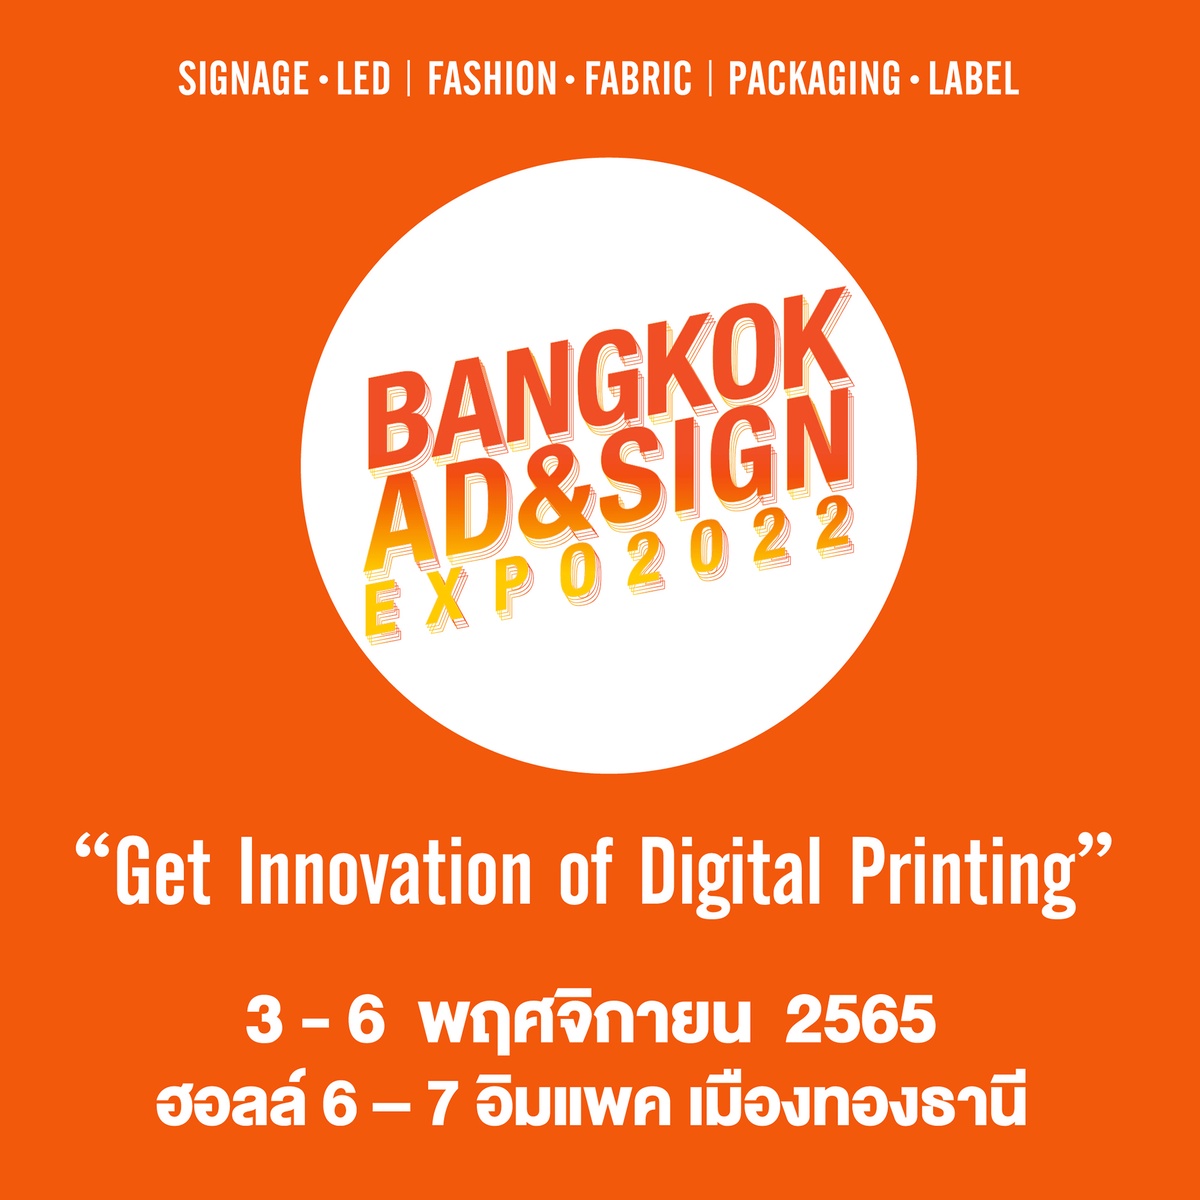 BANGKOK AD SIGN EXPO 2022 งานใหญ่แห่งปี! ครบเครื่องเรื่องนวัตกรรมการผลิตงานป้าย สื่อโฆษณา และดิจิทัลพริ้นท์ติ้ง 3-6 พฤศจิกายนนี้ ที่อิมแพ็ค เมืองทองธานี